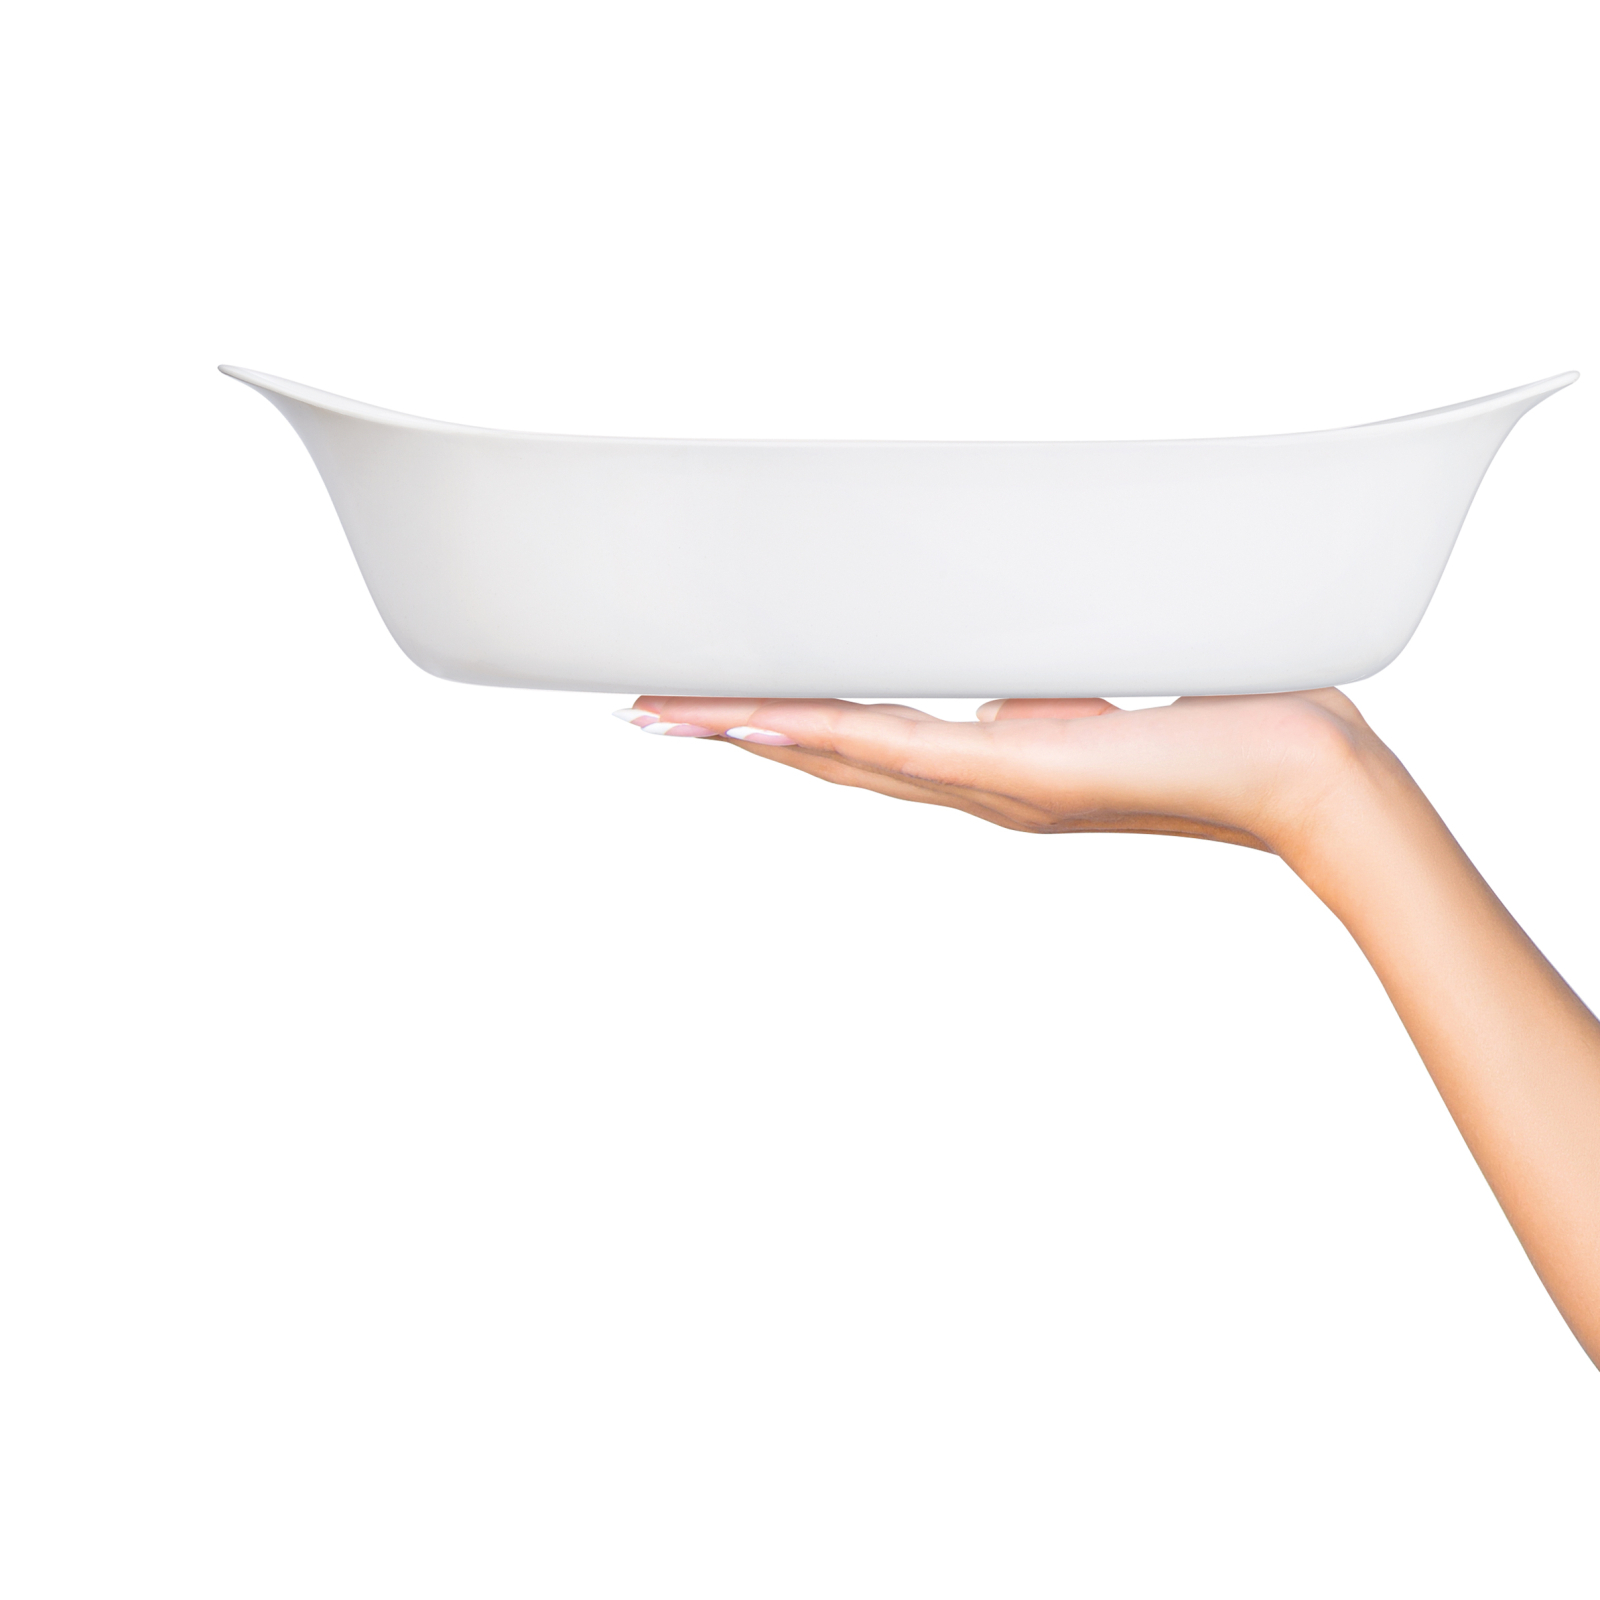 Форма для выпечки Luminarc Smart Cuisine овальна 29 х 17 см (N3567) изображение 5